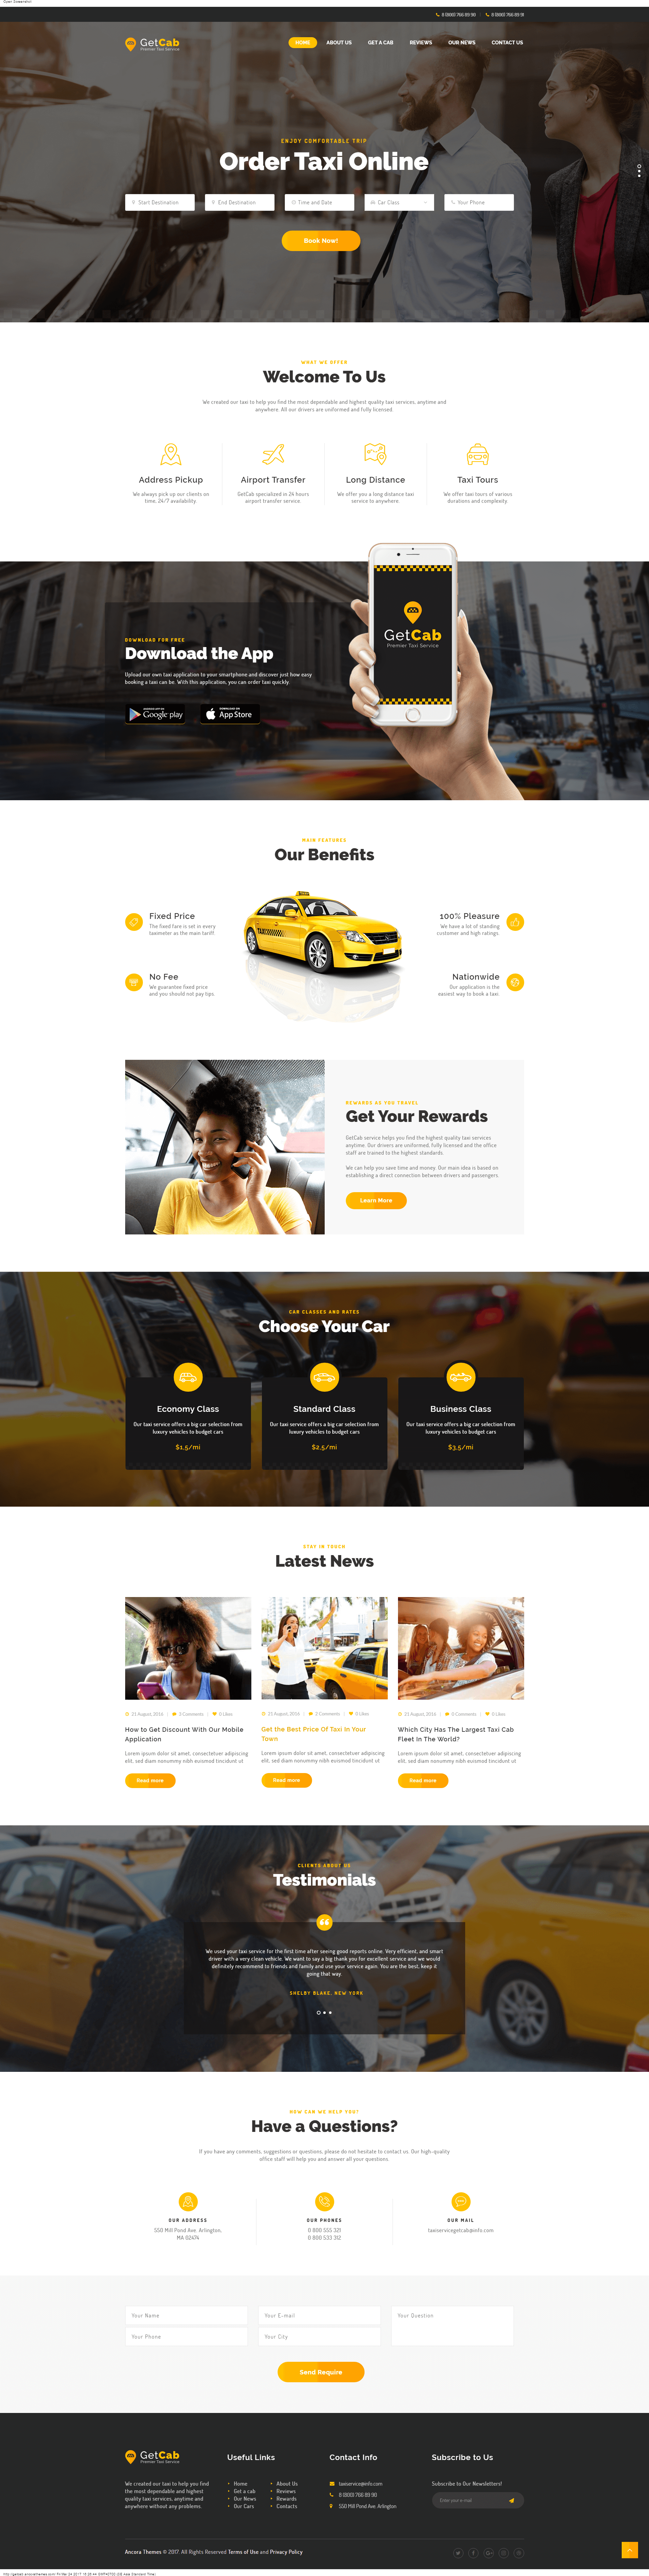 Mẫu website dịch vụ đặt taxi online